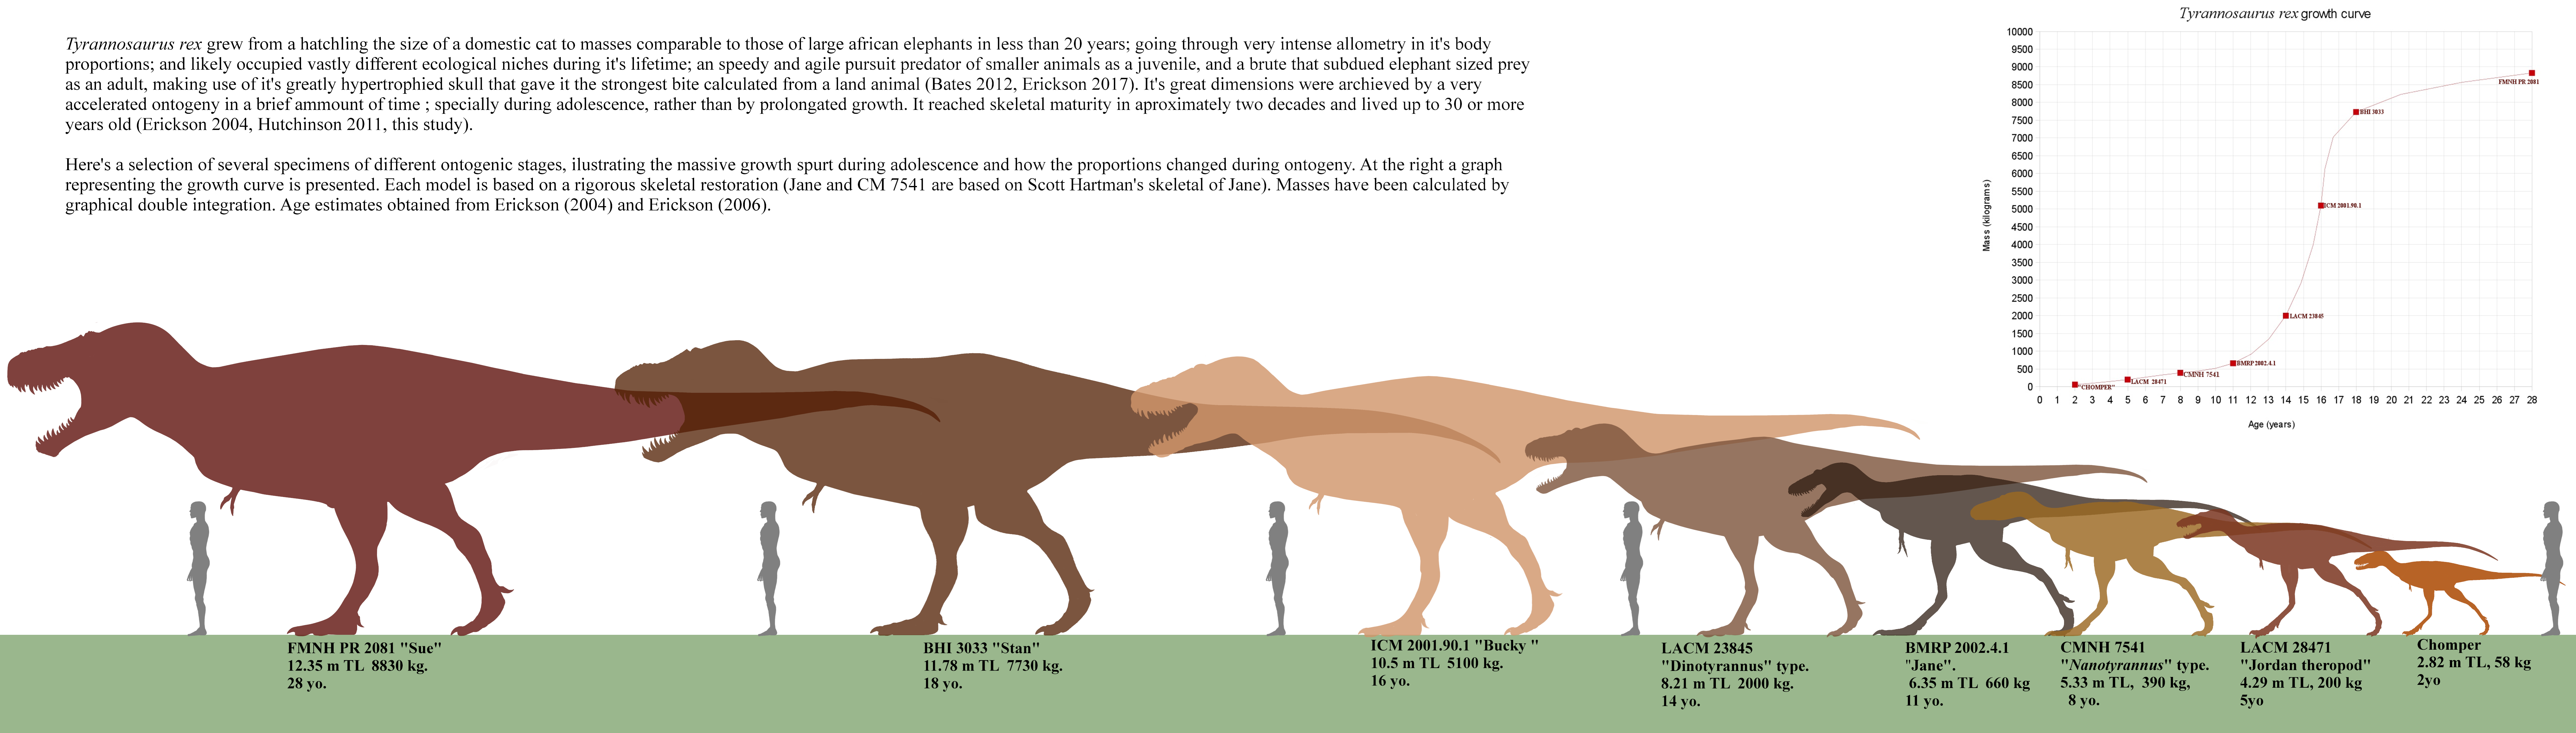 Tyrannosaurus rex - Página 5 Da3k5zl-0dc1dc90-b0e3-49cd-8358-32d758ab63ea.png?token=eyJ0eXAiOiJKV1QiLCJhbGciOiJIUzI1NiJ9.eyJzdWIiOiJ1cm46YXBwOjdlMGQxODg5ODIyNjQzNzNhNWYwZDQxNWVhMGQyNmUwIiwiaXNzIjoidXJuOmFwcDo3ZTBkMTg4OTgyMjY0MzczYTVmMGQ0MTVlYTBkMjZlMCIsIm9iaiI6W1t7InBhdGgiOiJcL2ZcL2ViZmNlZjZiLTc2ZWMtNDU3Mi05ODFlLTI2ZmJlNGIyN2ZhYlwvZGEzazV6bC0wZGMxZGM5MC1iMGUzLTQ5Y2QtODM1OC0zMmQ3NThhYjYzZWEucG5nIn1dXSwiYXVkIjpbInVybjpzZXJ2aWNlOmZpbGUuZG93bmxvYWQiXX0